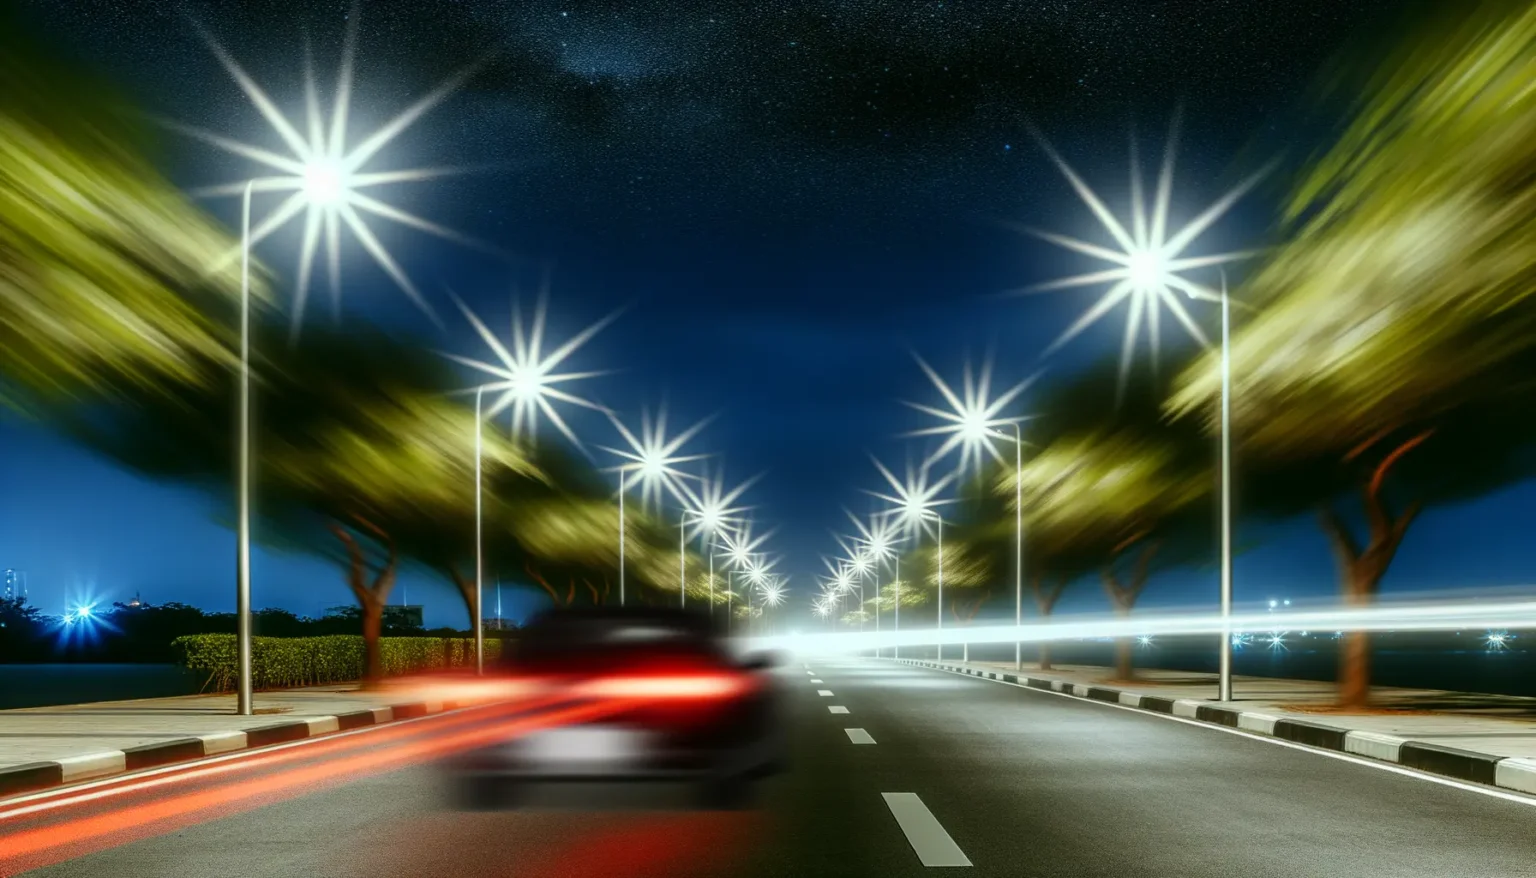 Nächtliche Szene einer Straße mit leuchtenden Straßenlaternen, die Sternlichteffekte erzeugen, mit verschwommenen Bäumen im Wind daneben und einem unscharfen, schnell fahrenden Auto, das rote Lichtspuren hinterlässt. Ein sternenklarer Himmel ist im Hintergrund sichtbar.